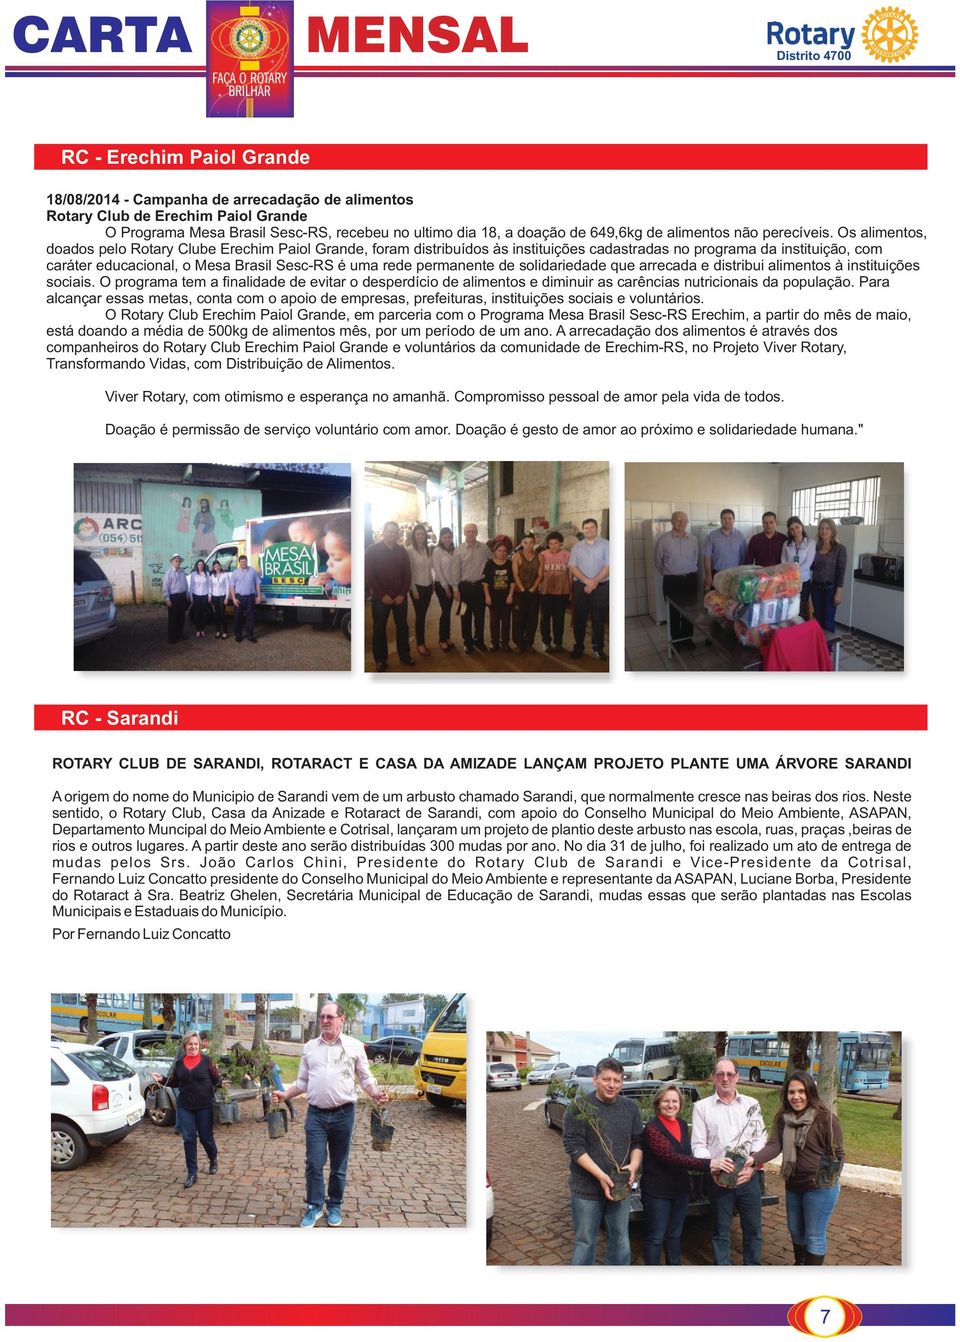 Os alimentos, doados pelo Rotary Clube Erechim Paiol Grande, foram distribuídos às instituições cadastradas no programa da instituição, com caráter educacional, o Mesa Brasil Sesc-RS é uma rede